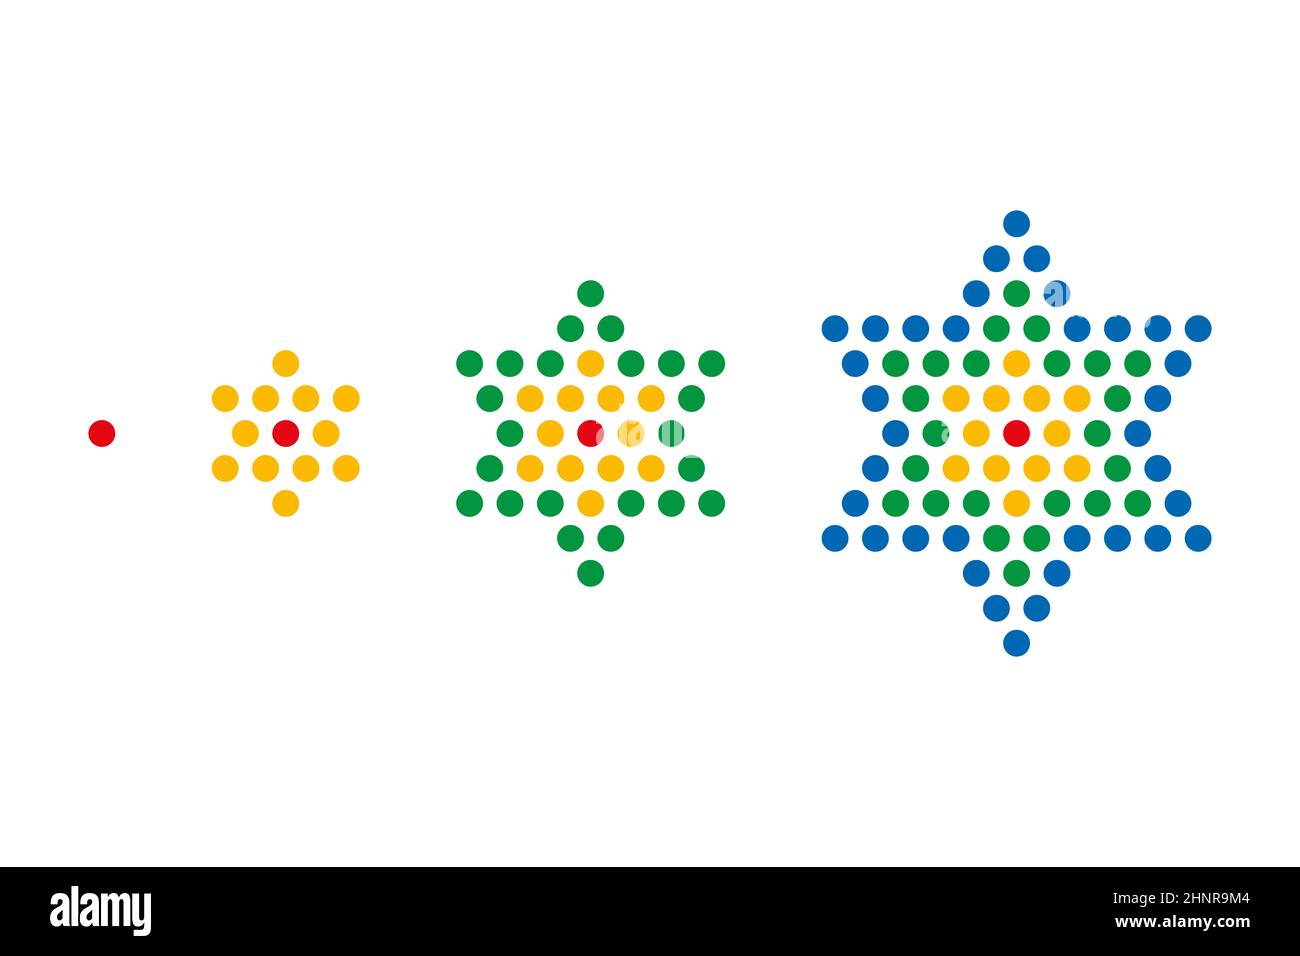 Die ersten vier Sternennummern werden durch farbige Punkte angezeigt. Zentrierte Figurenzahl, ein zentriertes Hexagramm (sechszackiger Stern), wie z. B. der Davidstern. Stockfoto